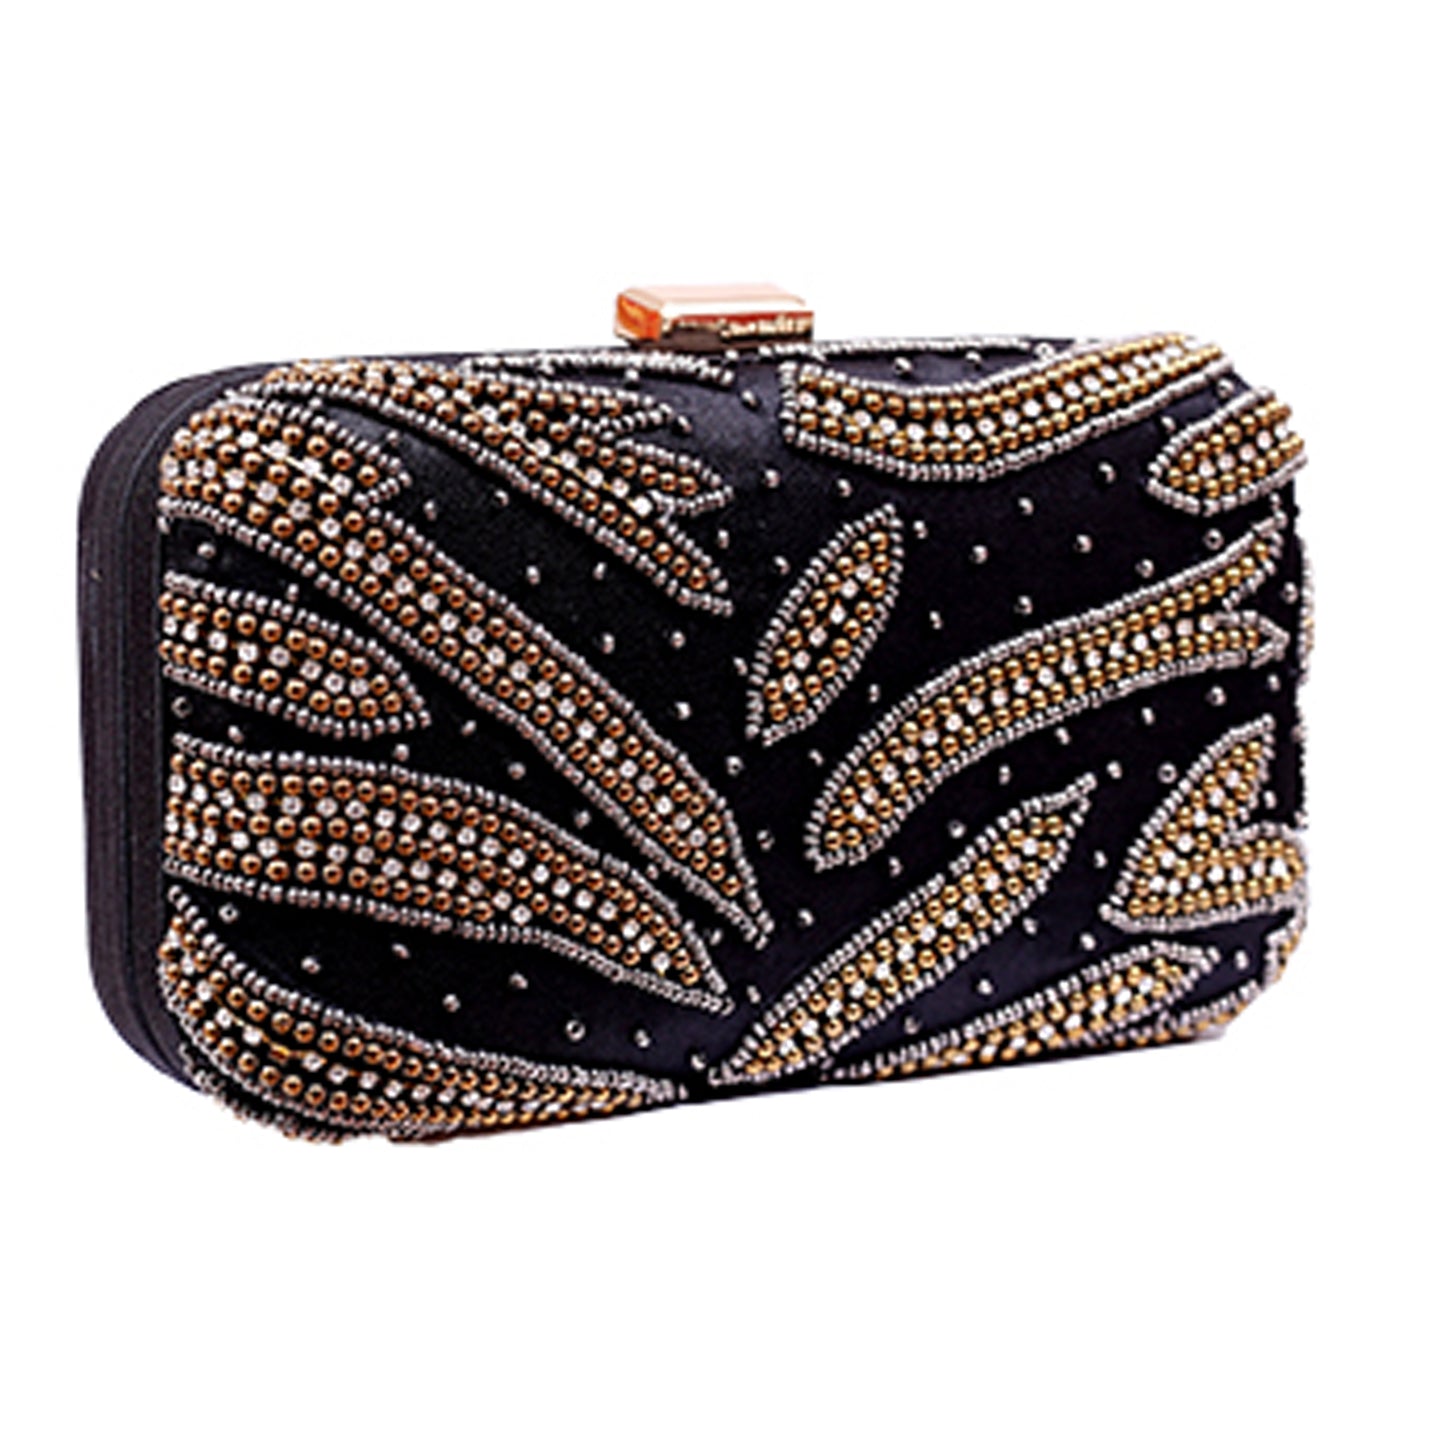 Angeline's Shiny Black Snake Design Clutch Bag